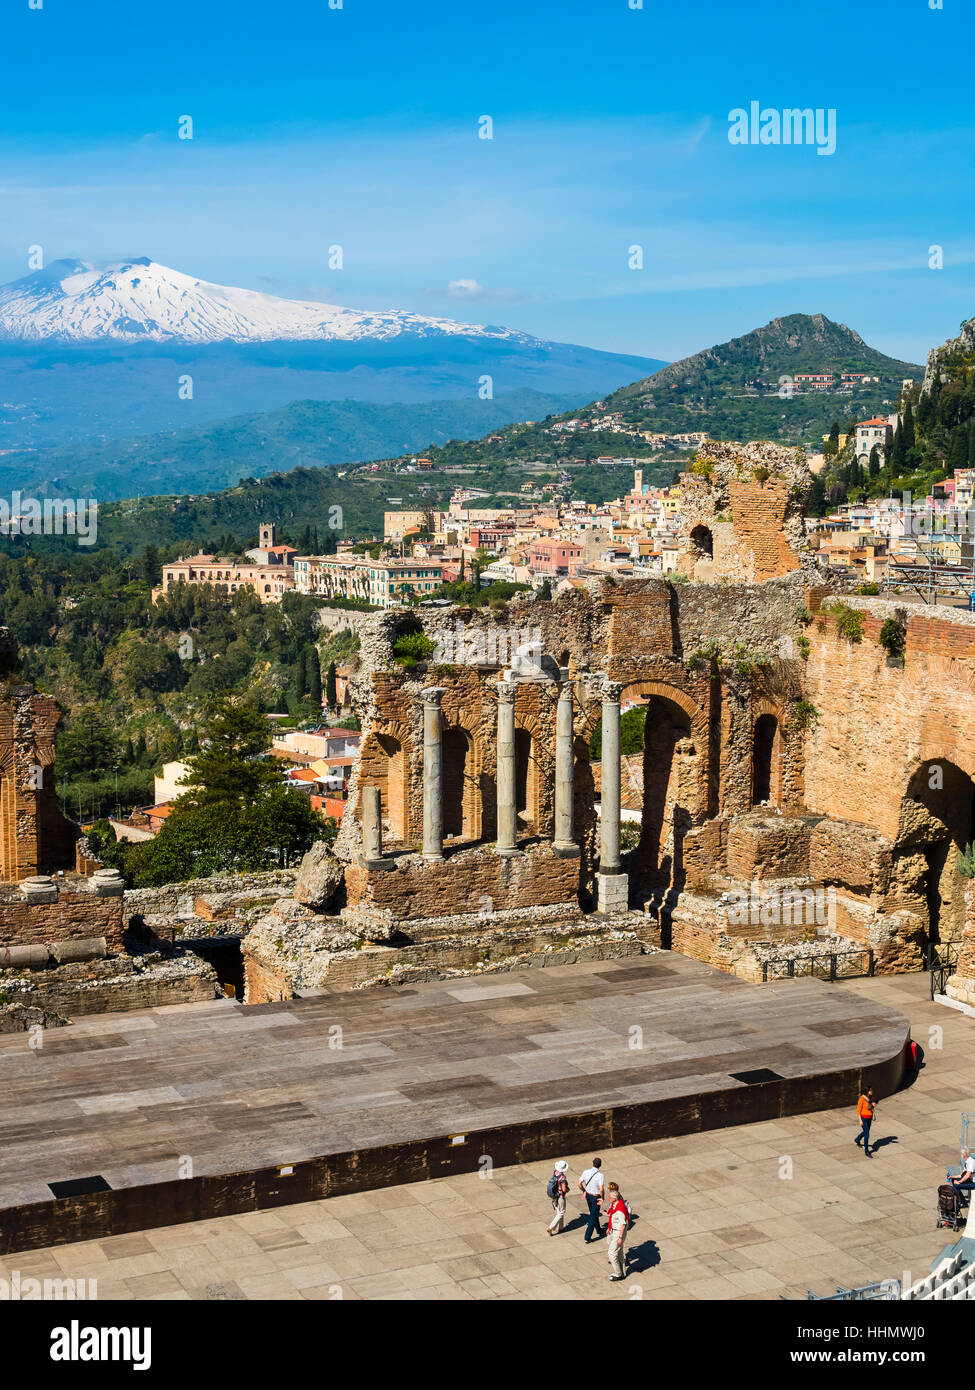 Amphitheater Ruinen, Teatro Antico di Taormina, Taormina, Sizilien, Italien Stockfoto